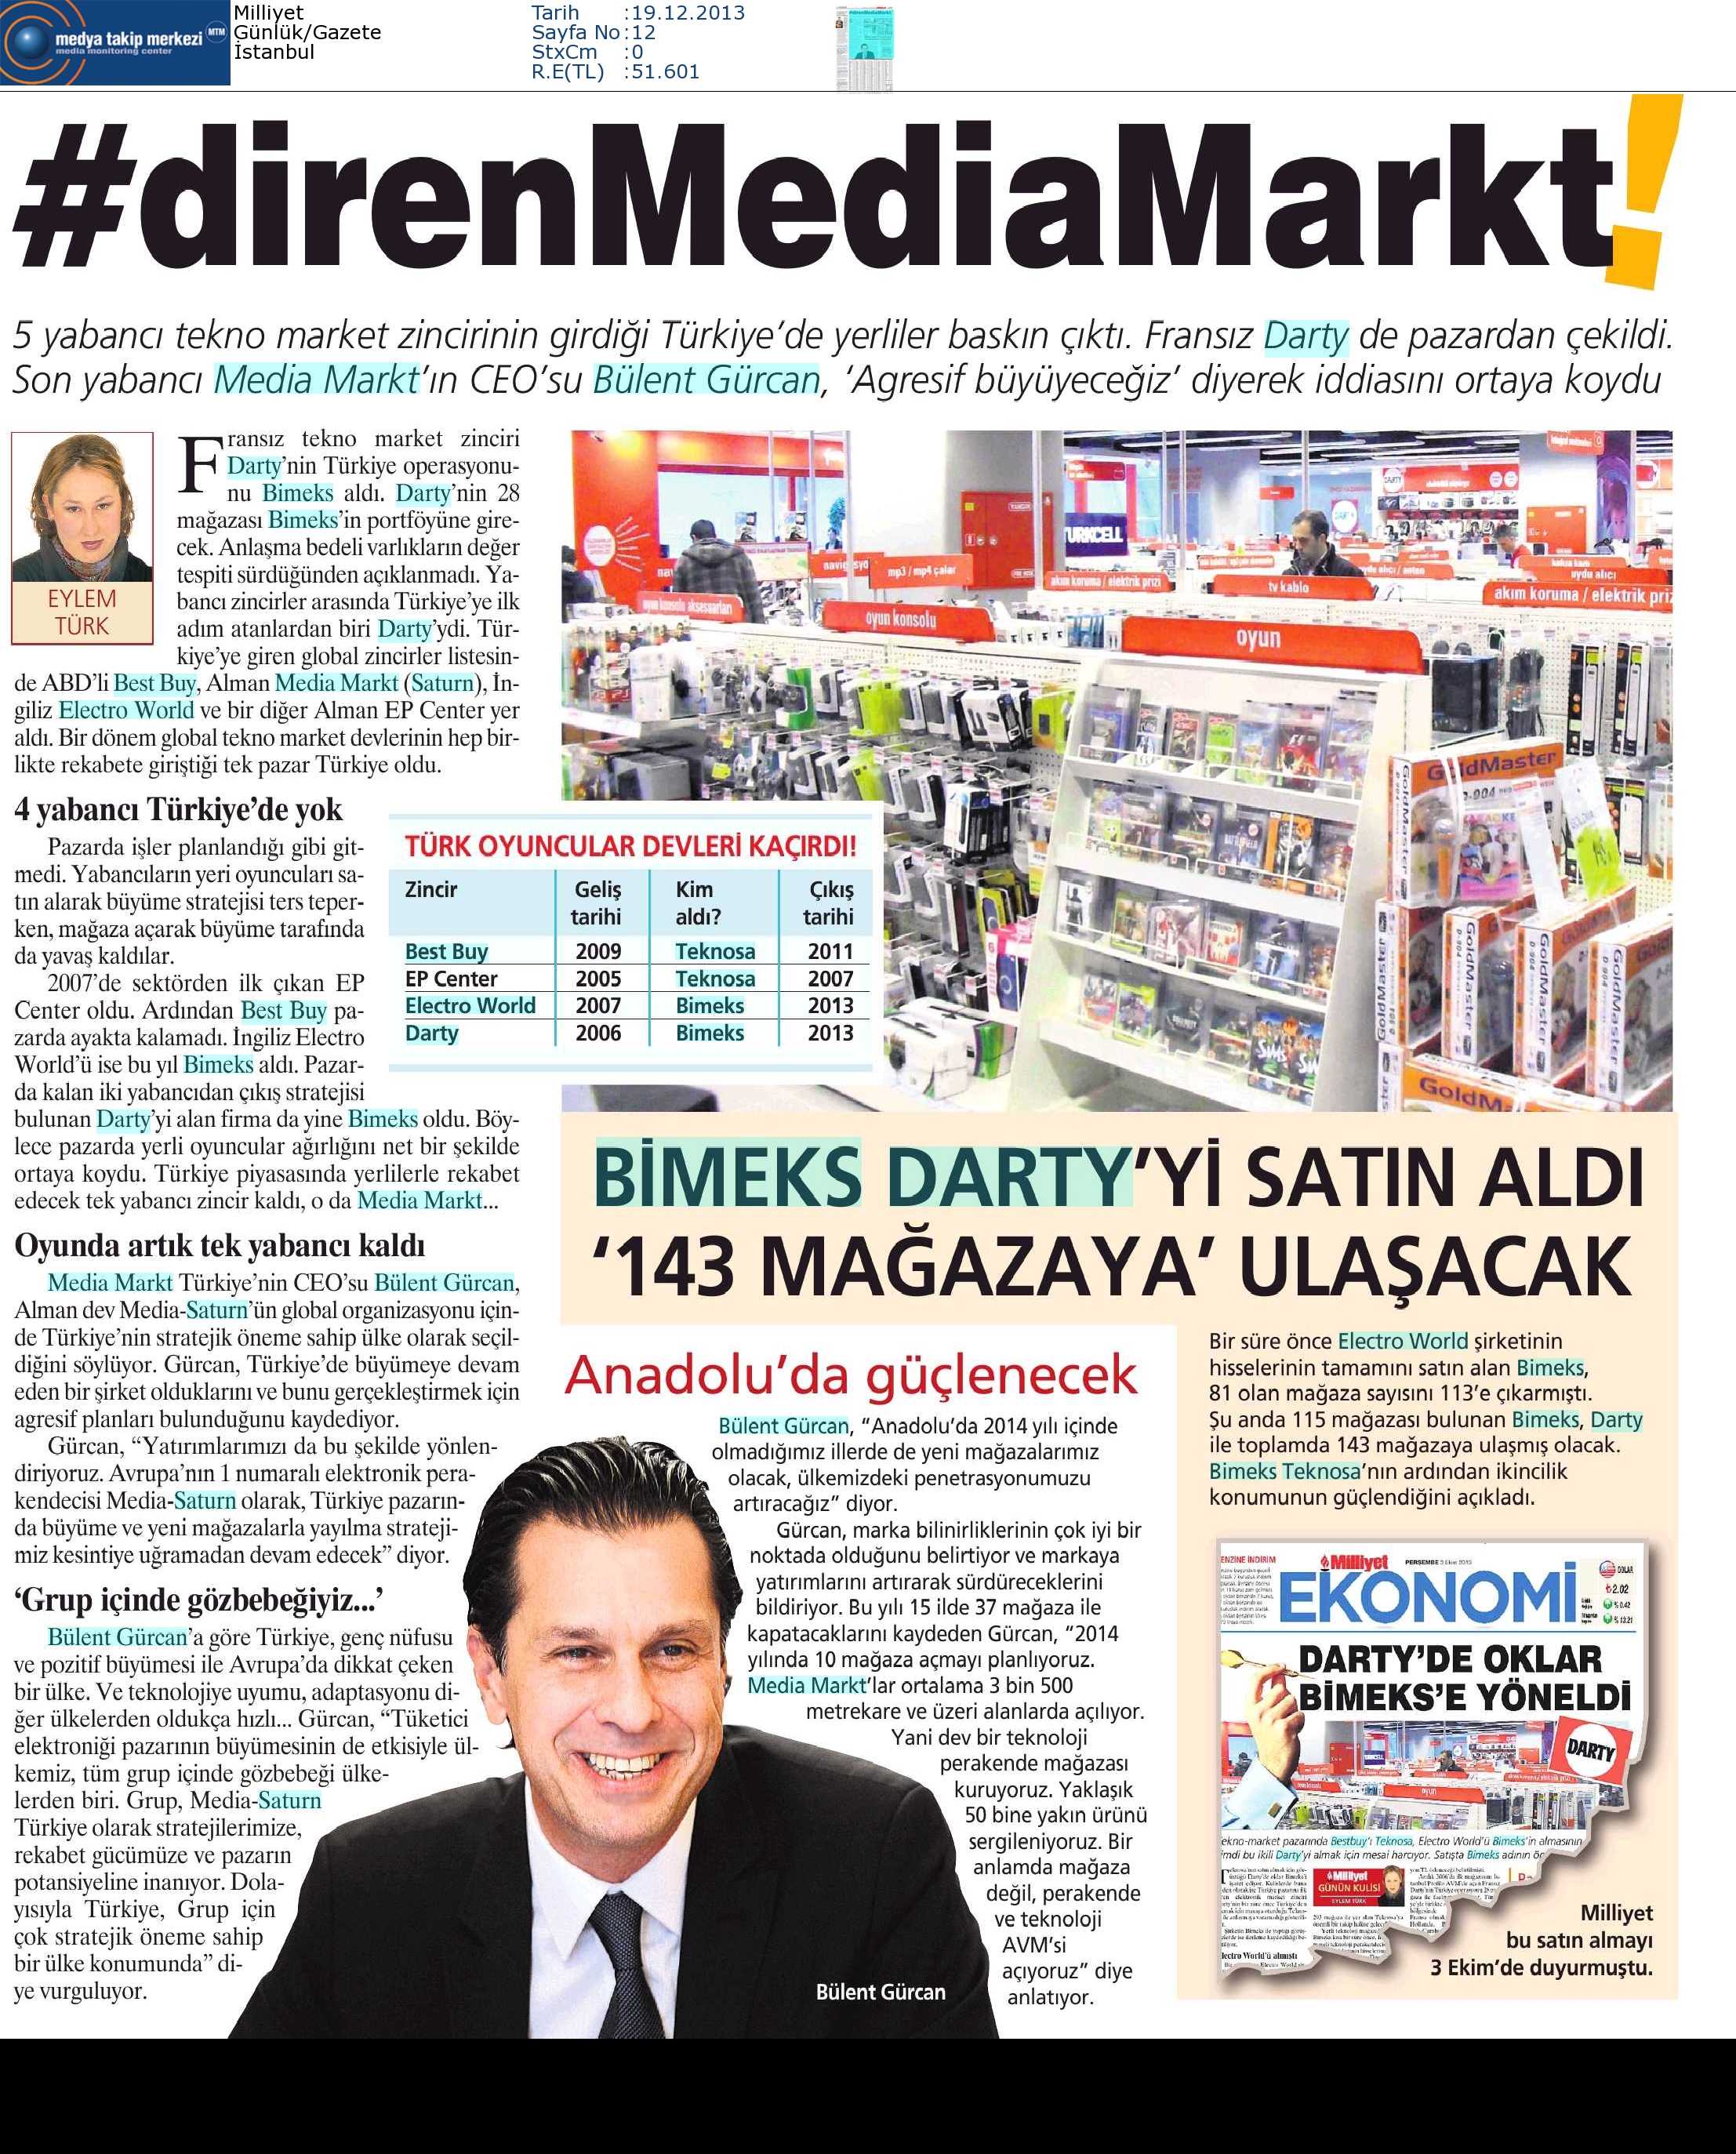 Milliyet-_DİRENMEDİAMARKT-19.12.2013